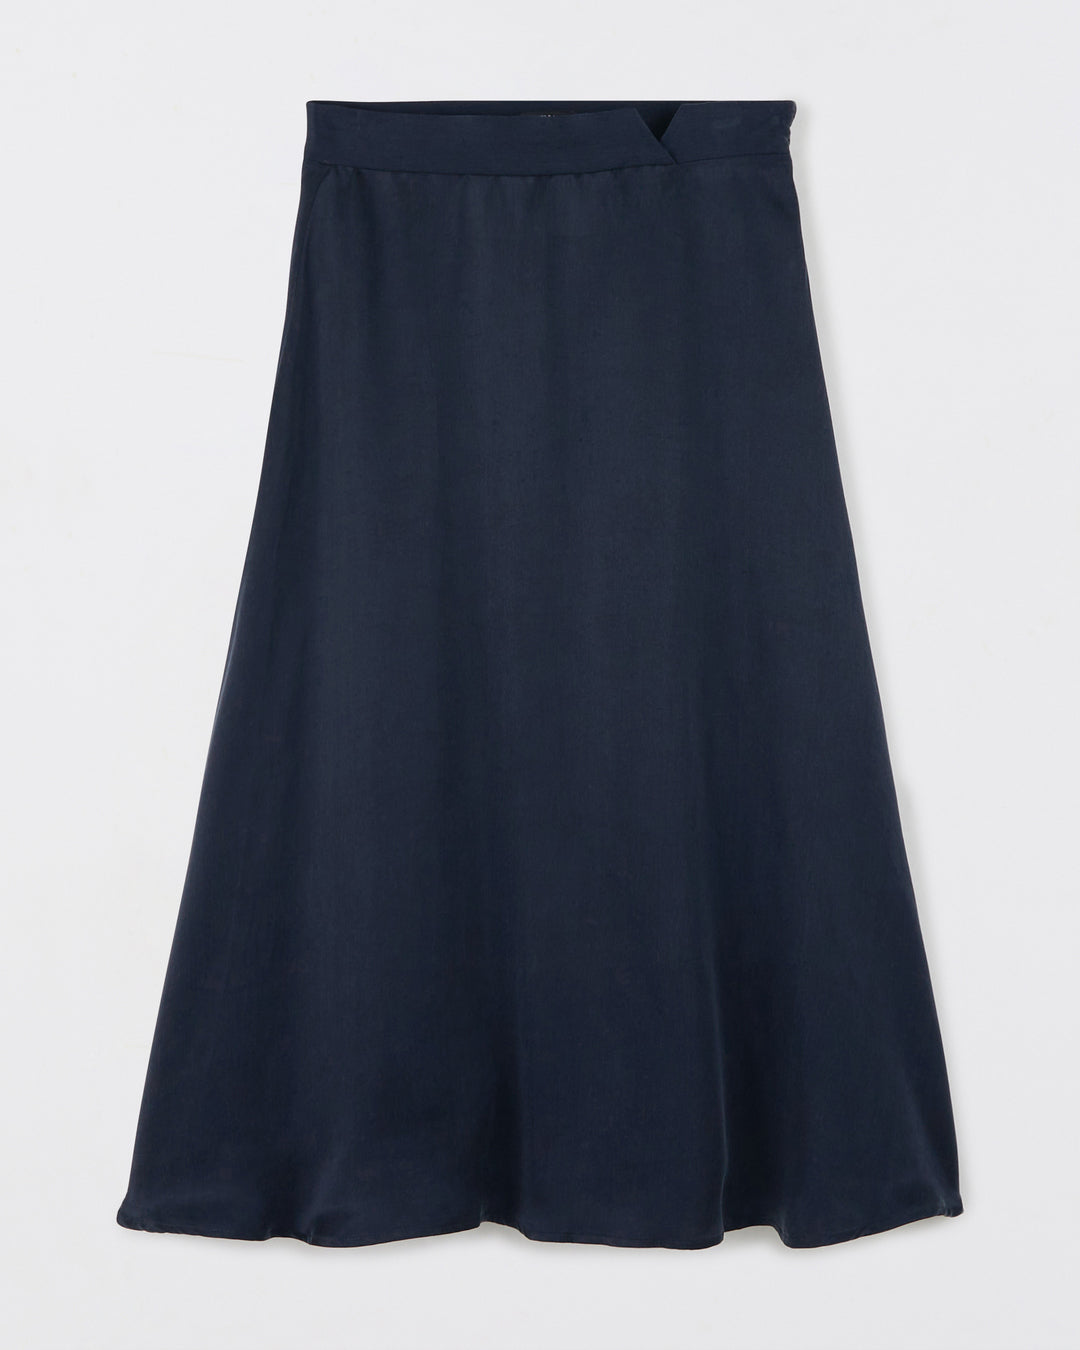 Seville Midi Skirt - Navy Blue